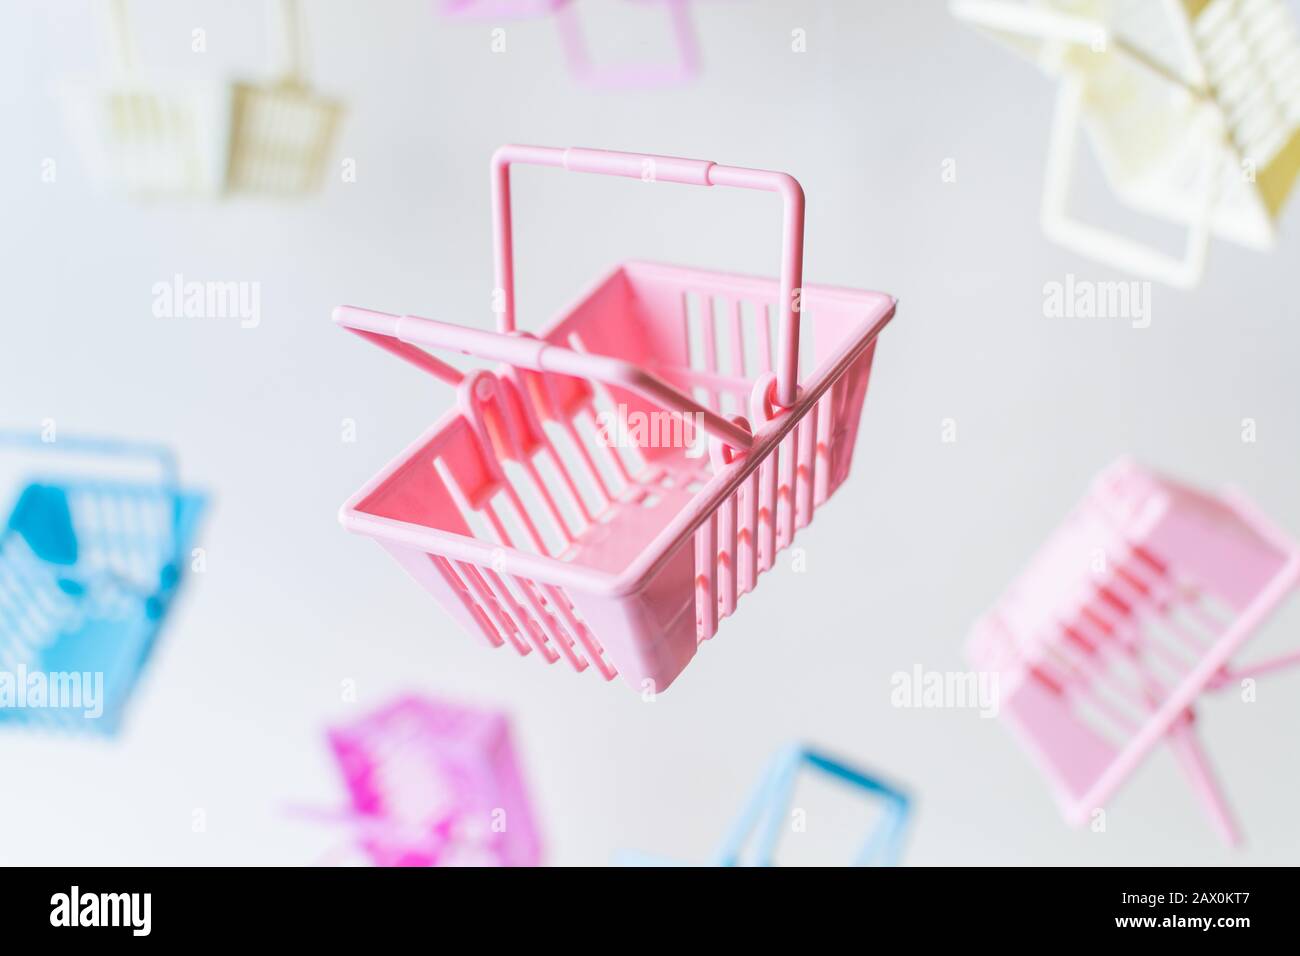 Levitating empty plastic shopping baskets on white background. Stock Photo